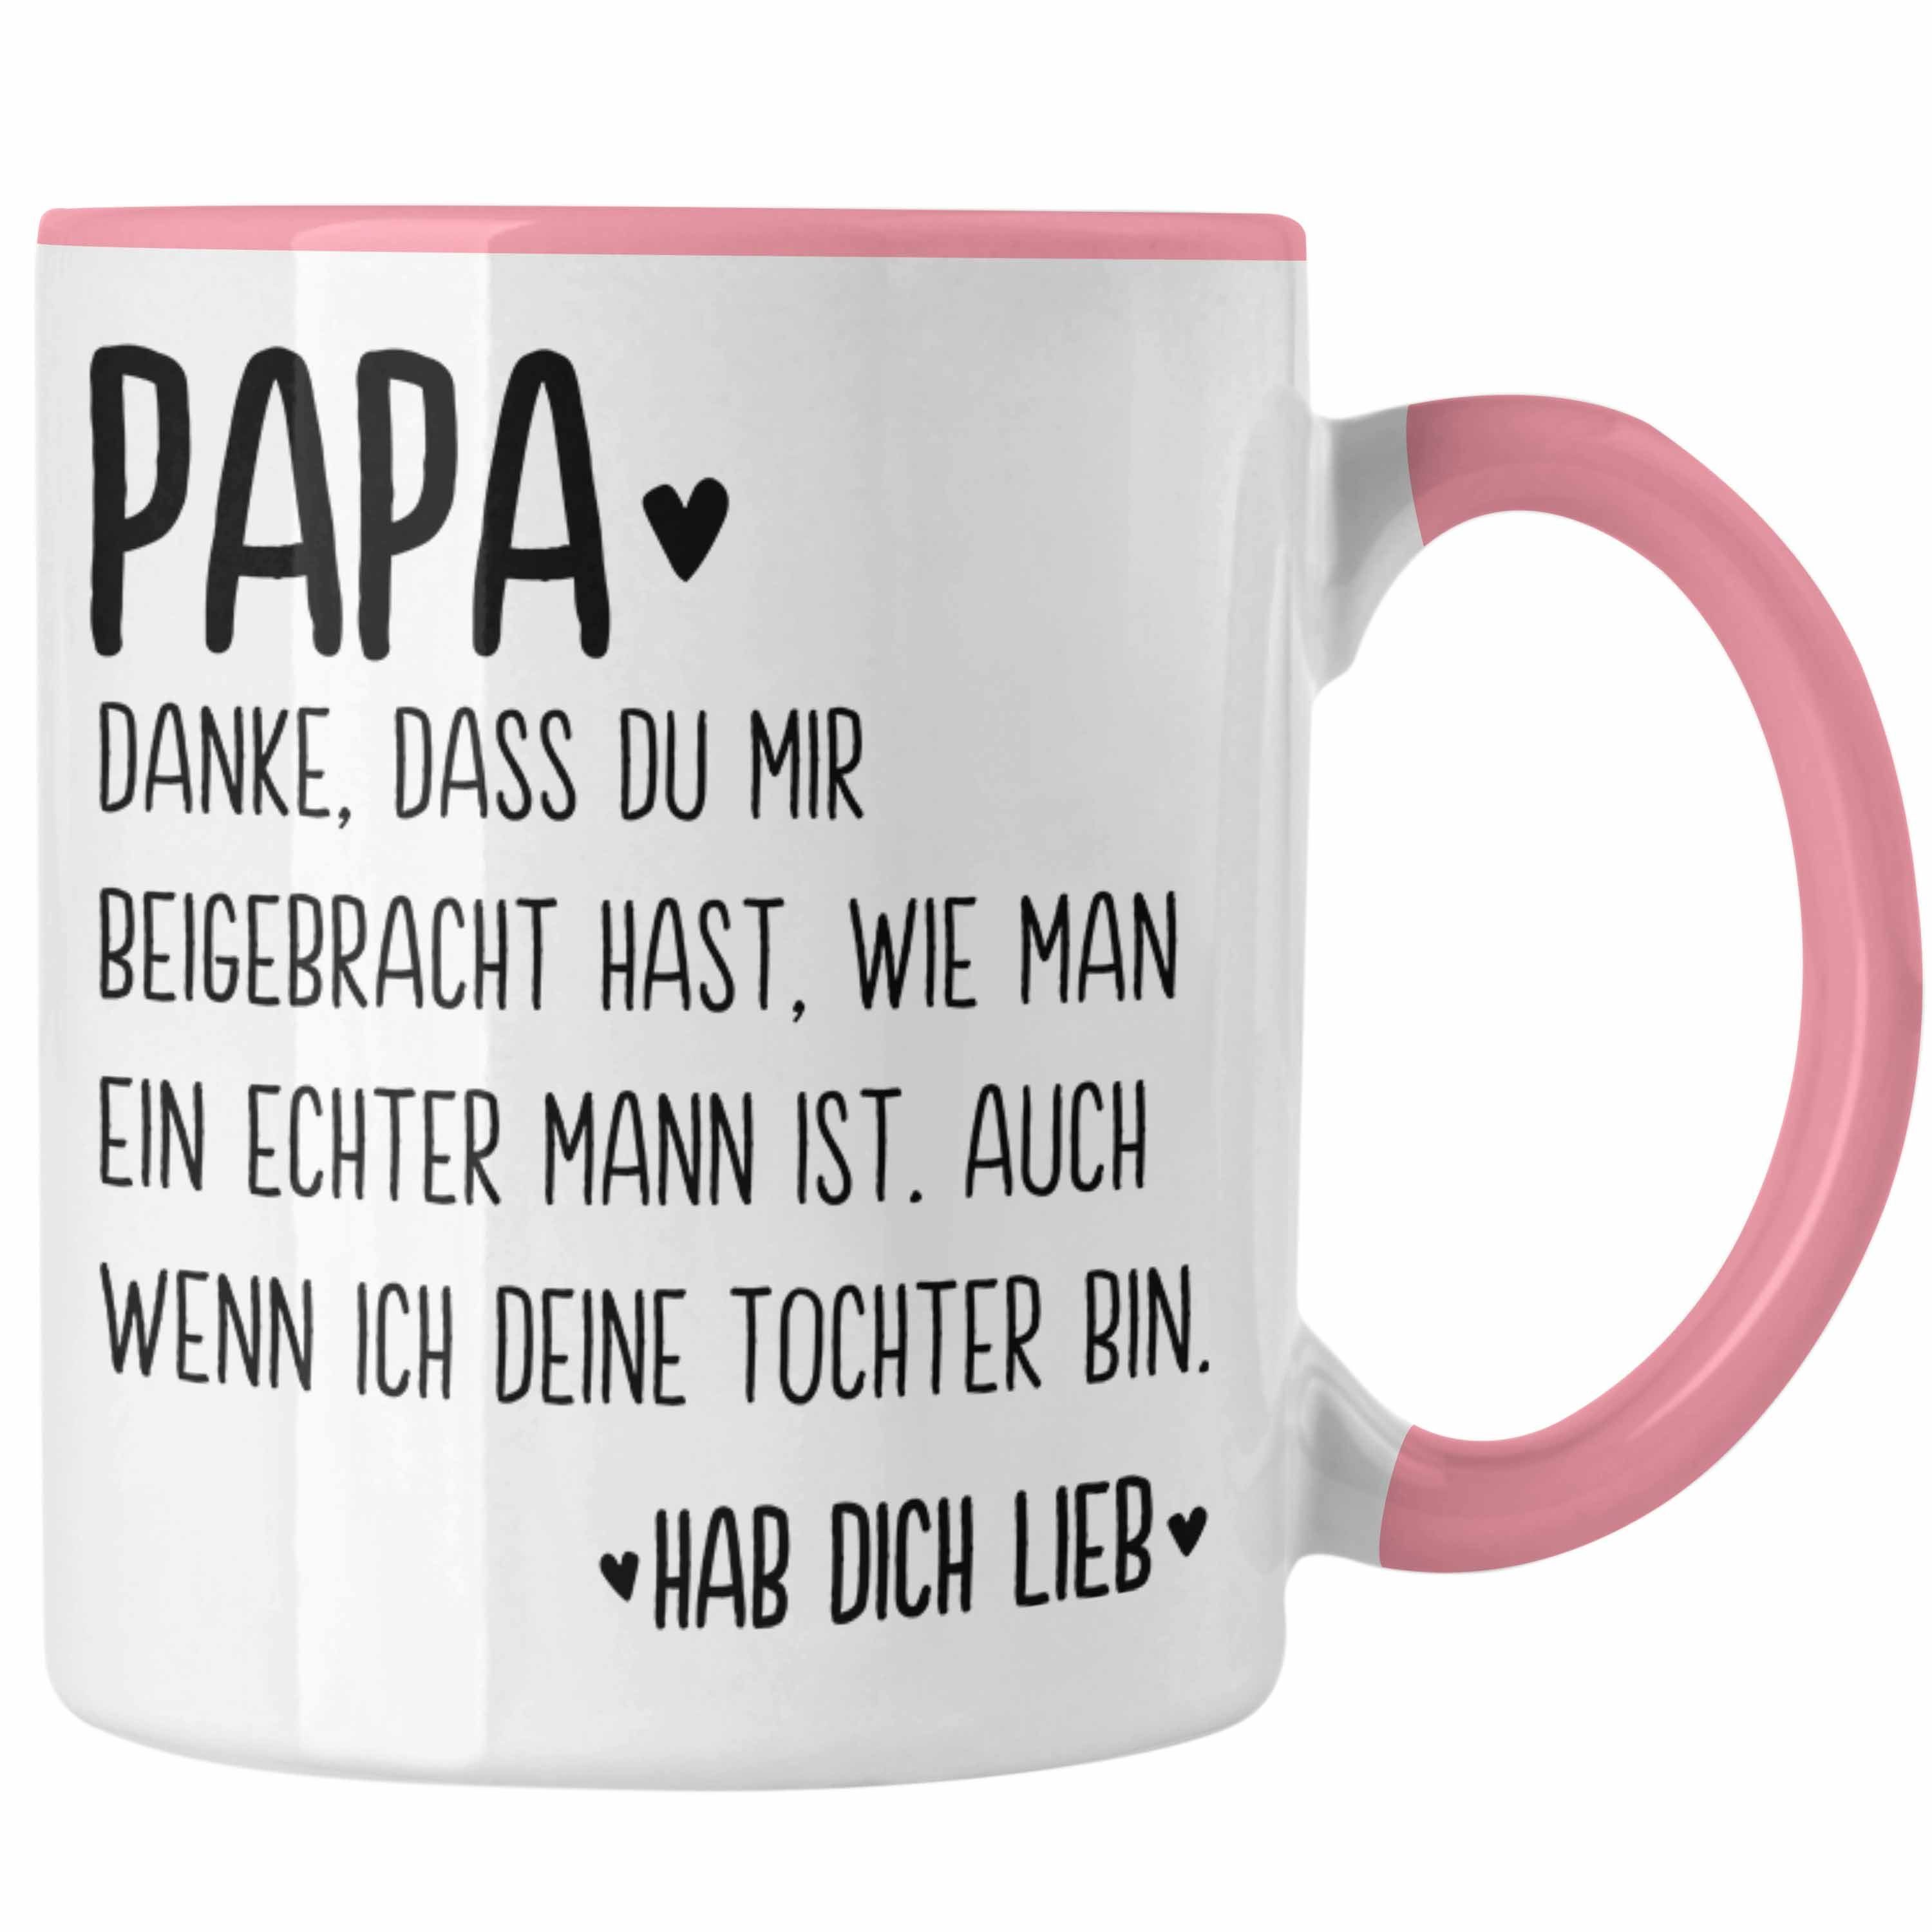 Trendation Rosa Trendation von Vater Vatertag Tasse Tochter Geschenkidee Geschenk - Papa Spruch Sprüche Kaffeetasse Tasse